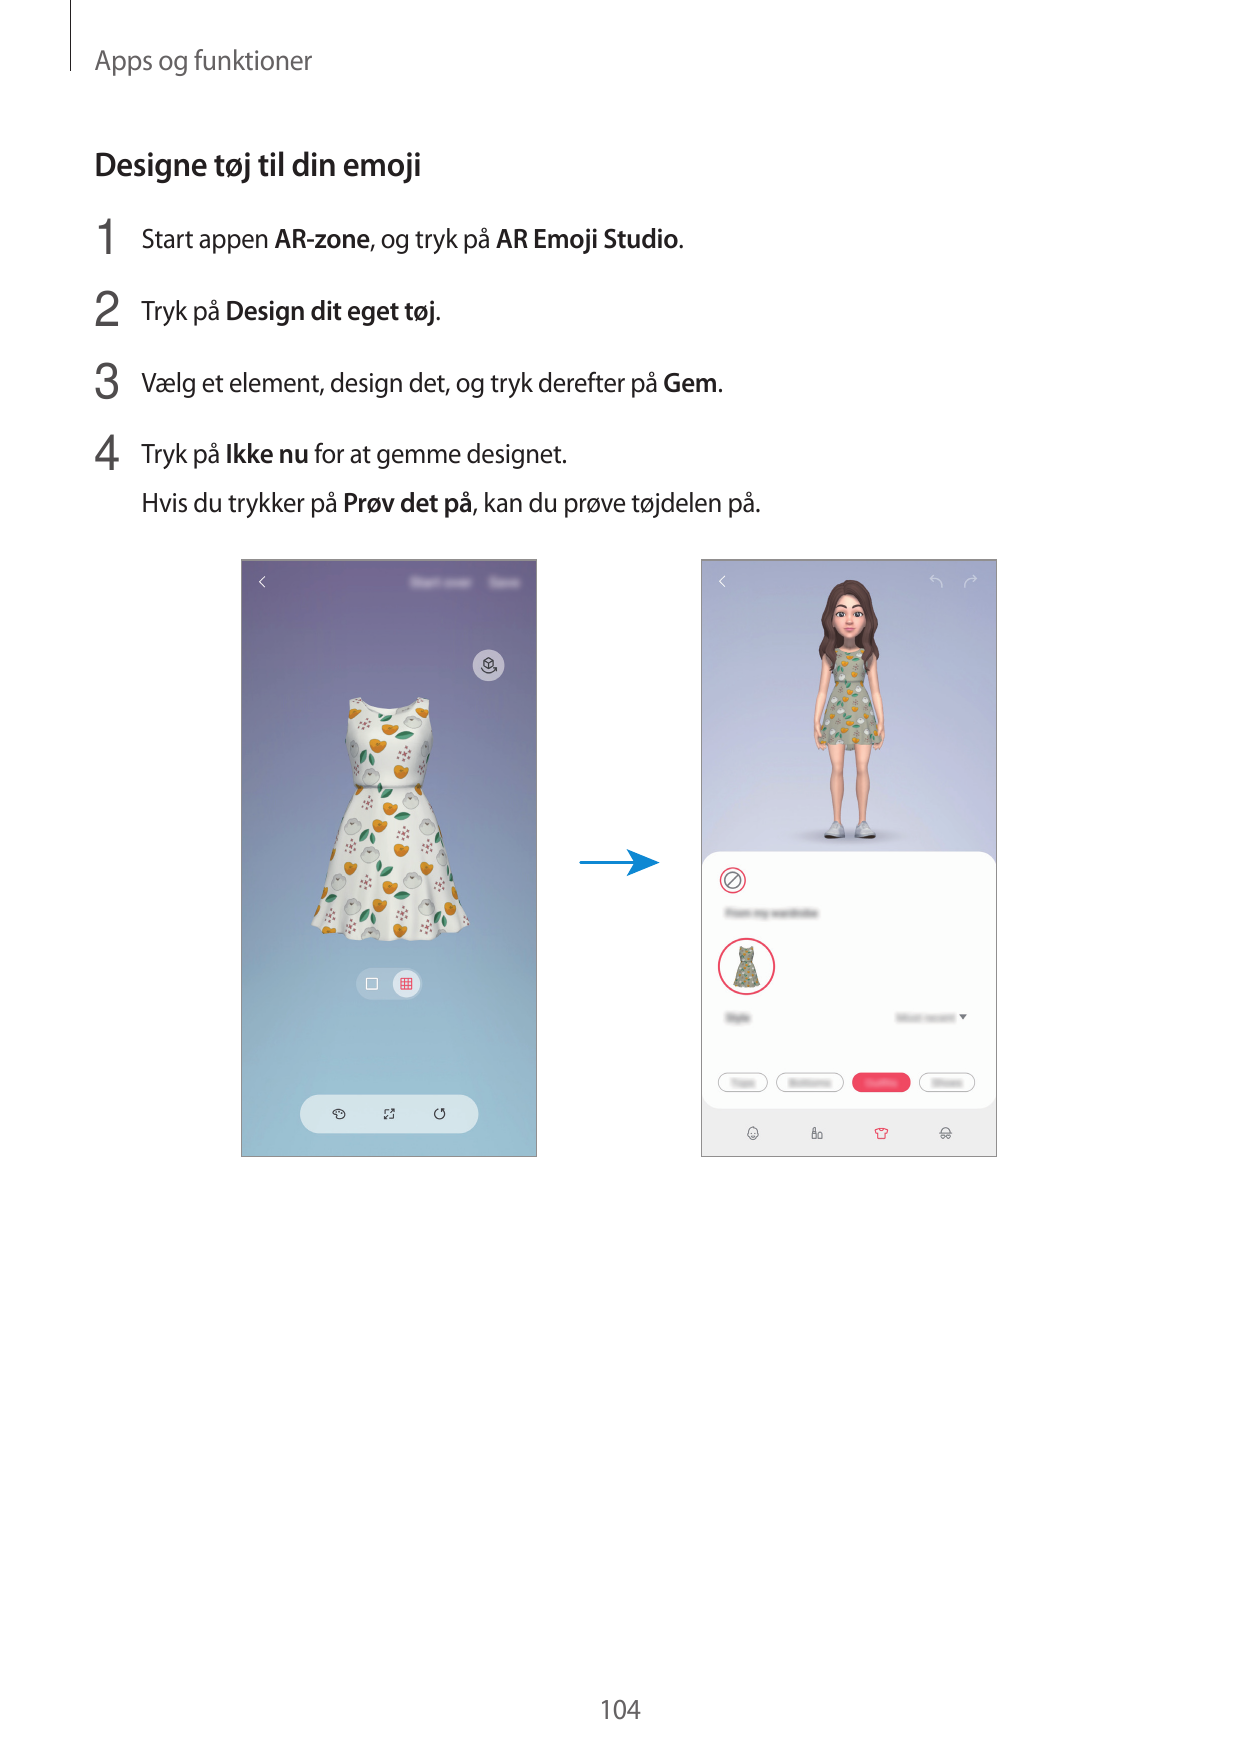 Apps og funktionerDesigne tøj til din emoji1 Start appen AR-zone, og tryk på AR Emoji Studio.2 Tryk på Design dit eget tøj.3 Væl